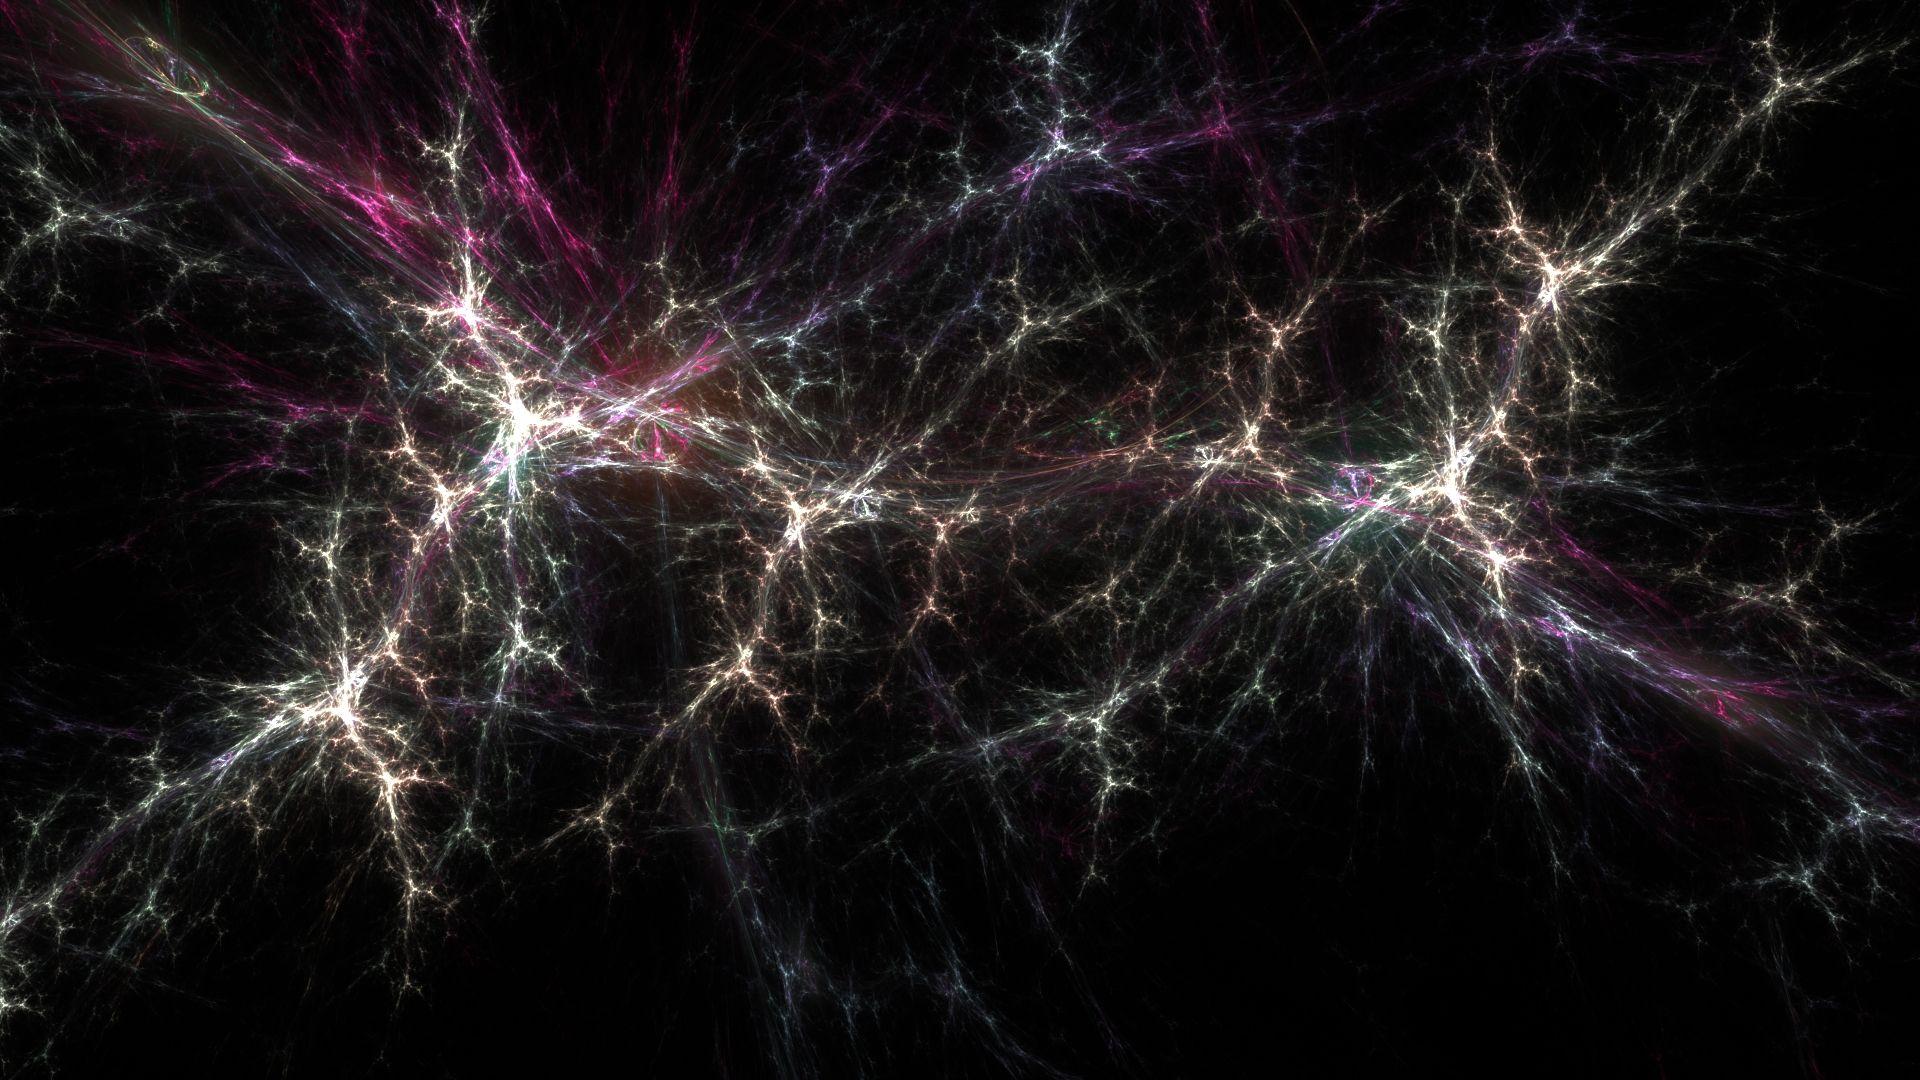 Neurons Wallpaper, 45 Desktop Image of Neurons